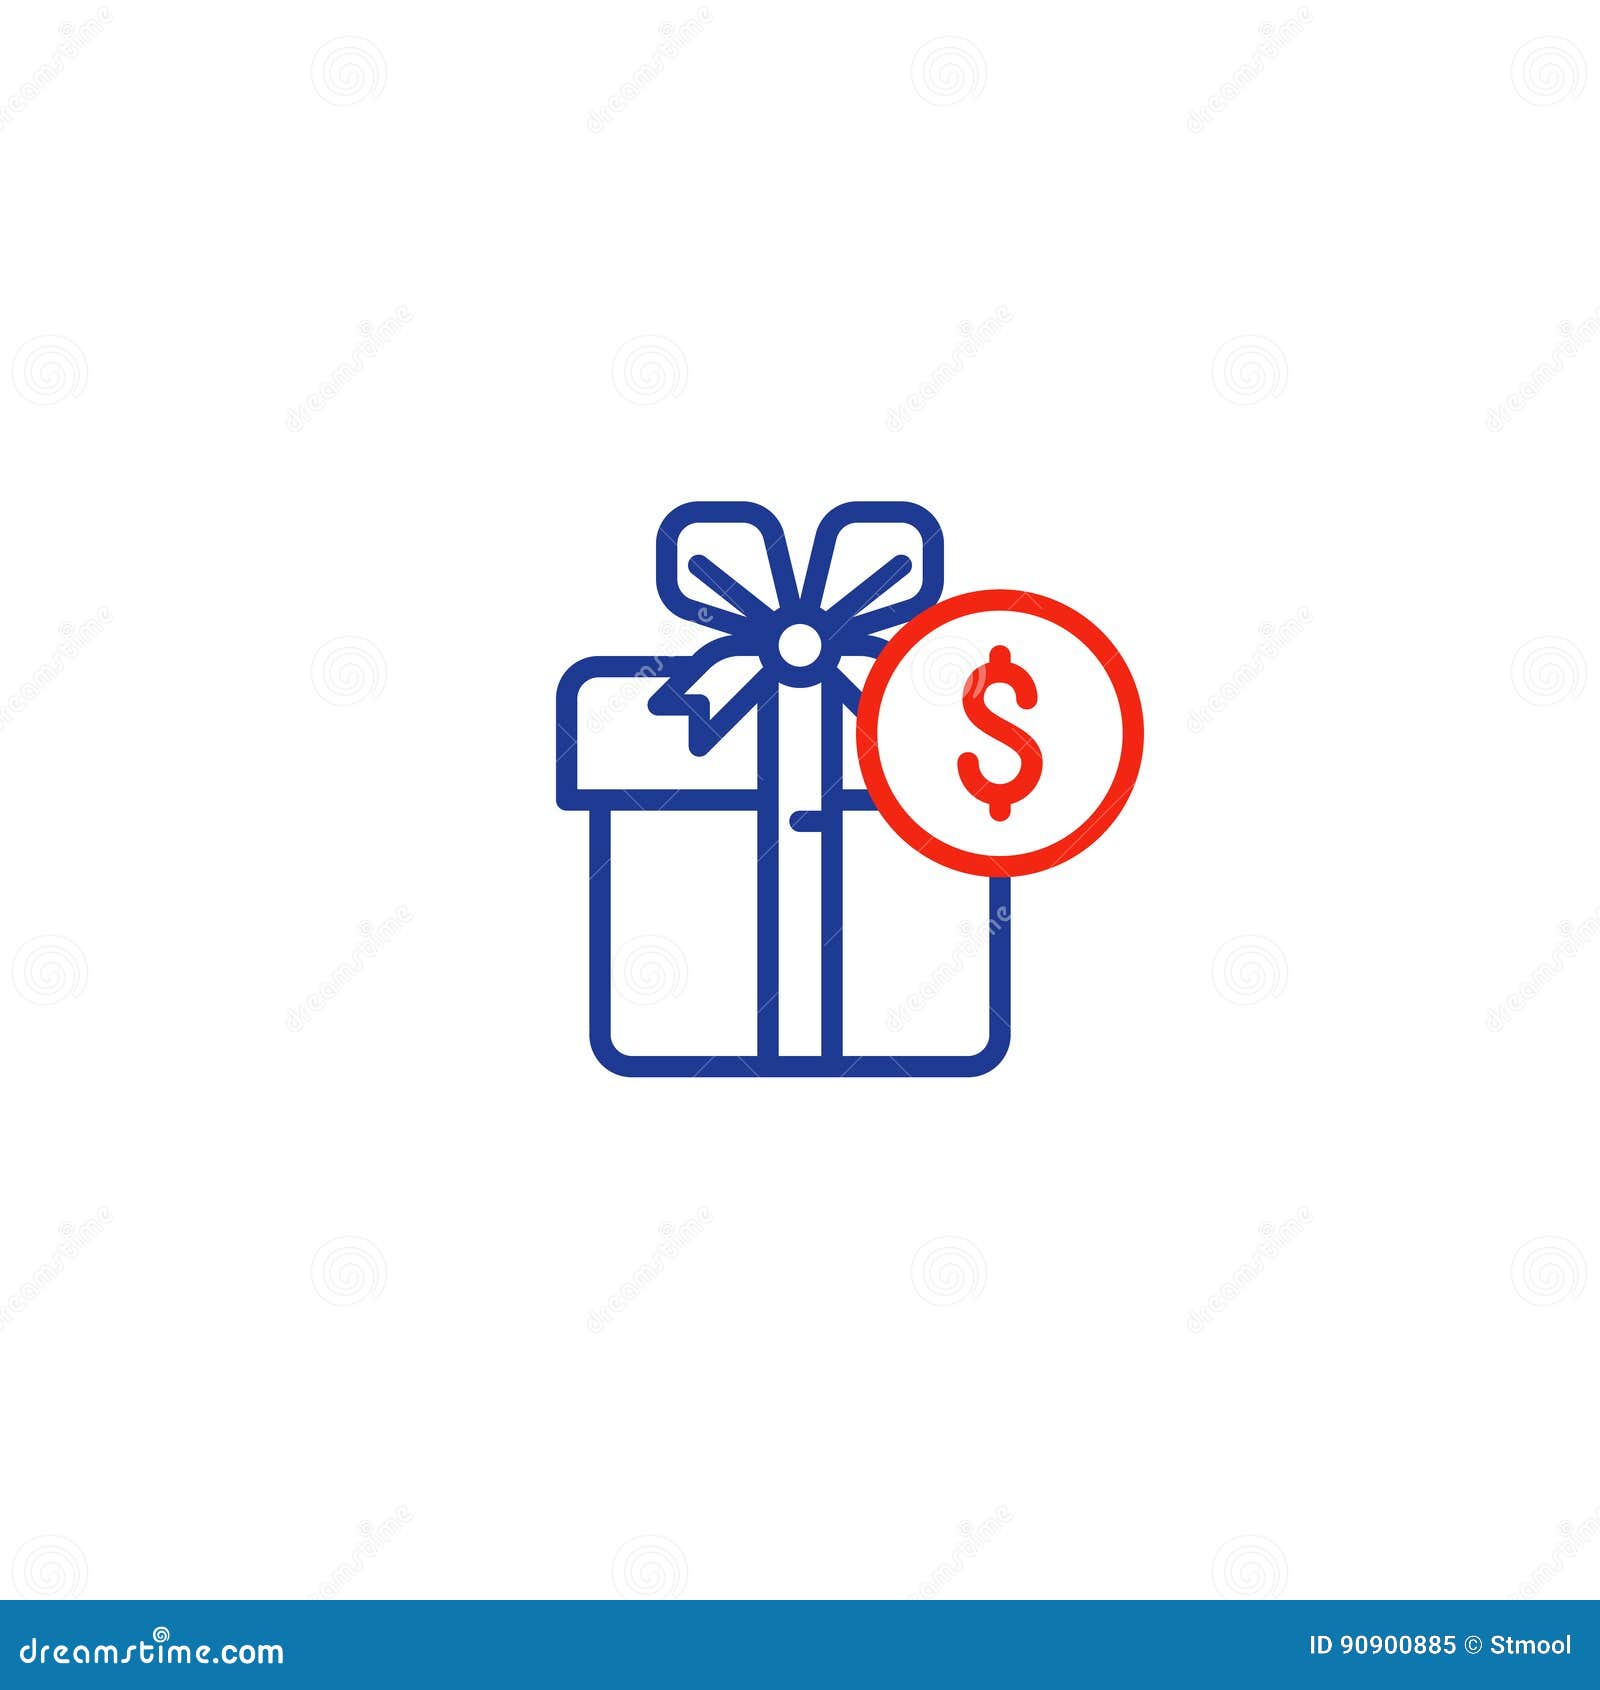 Caja de dinero - Iconos gratis de negocios y finanzas